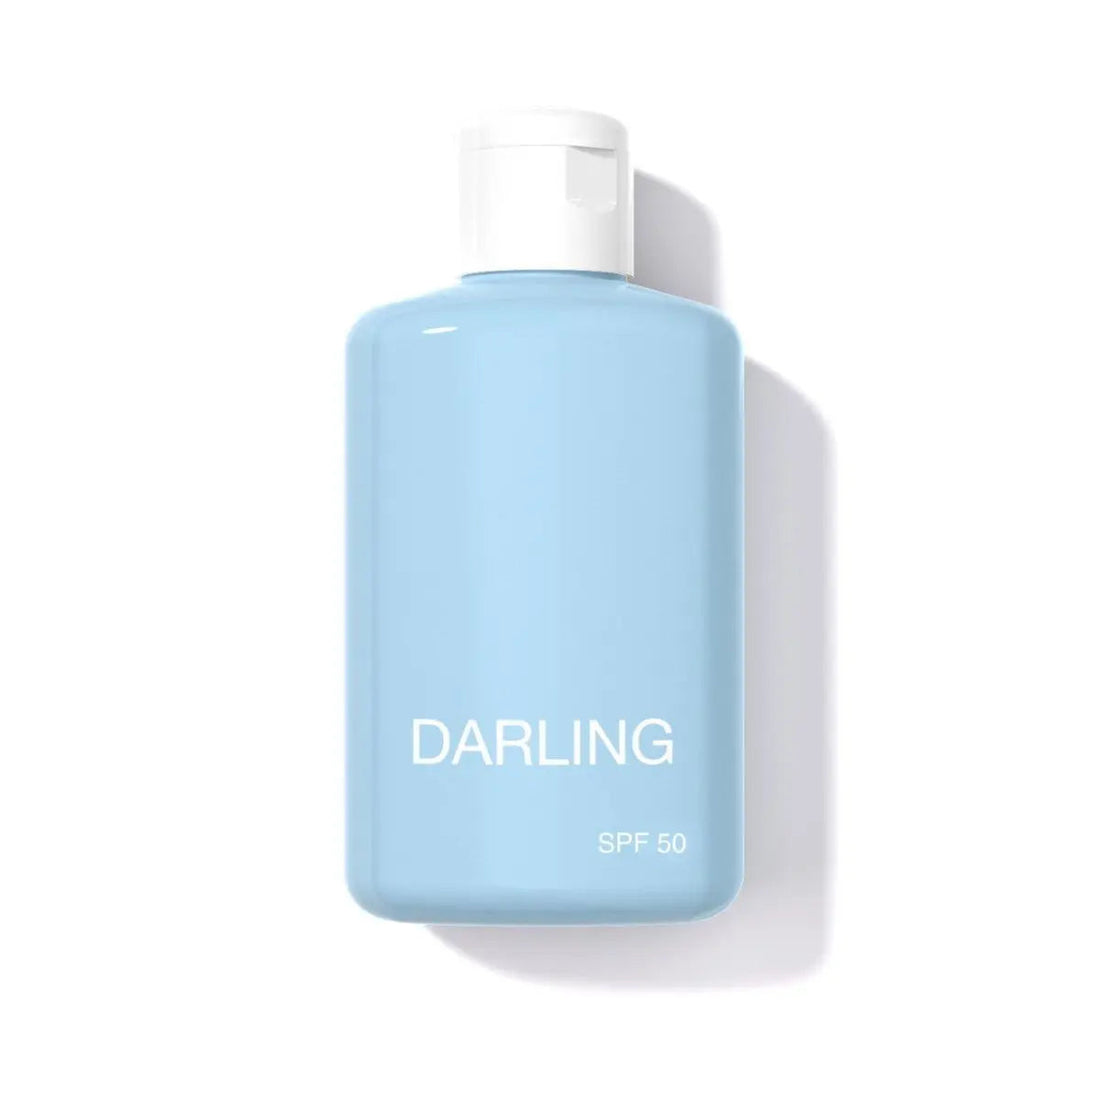 Darling 高防护乳液 SPF 50 150ml